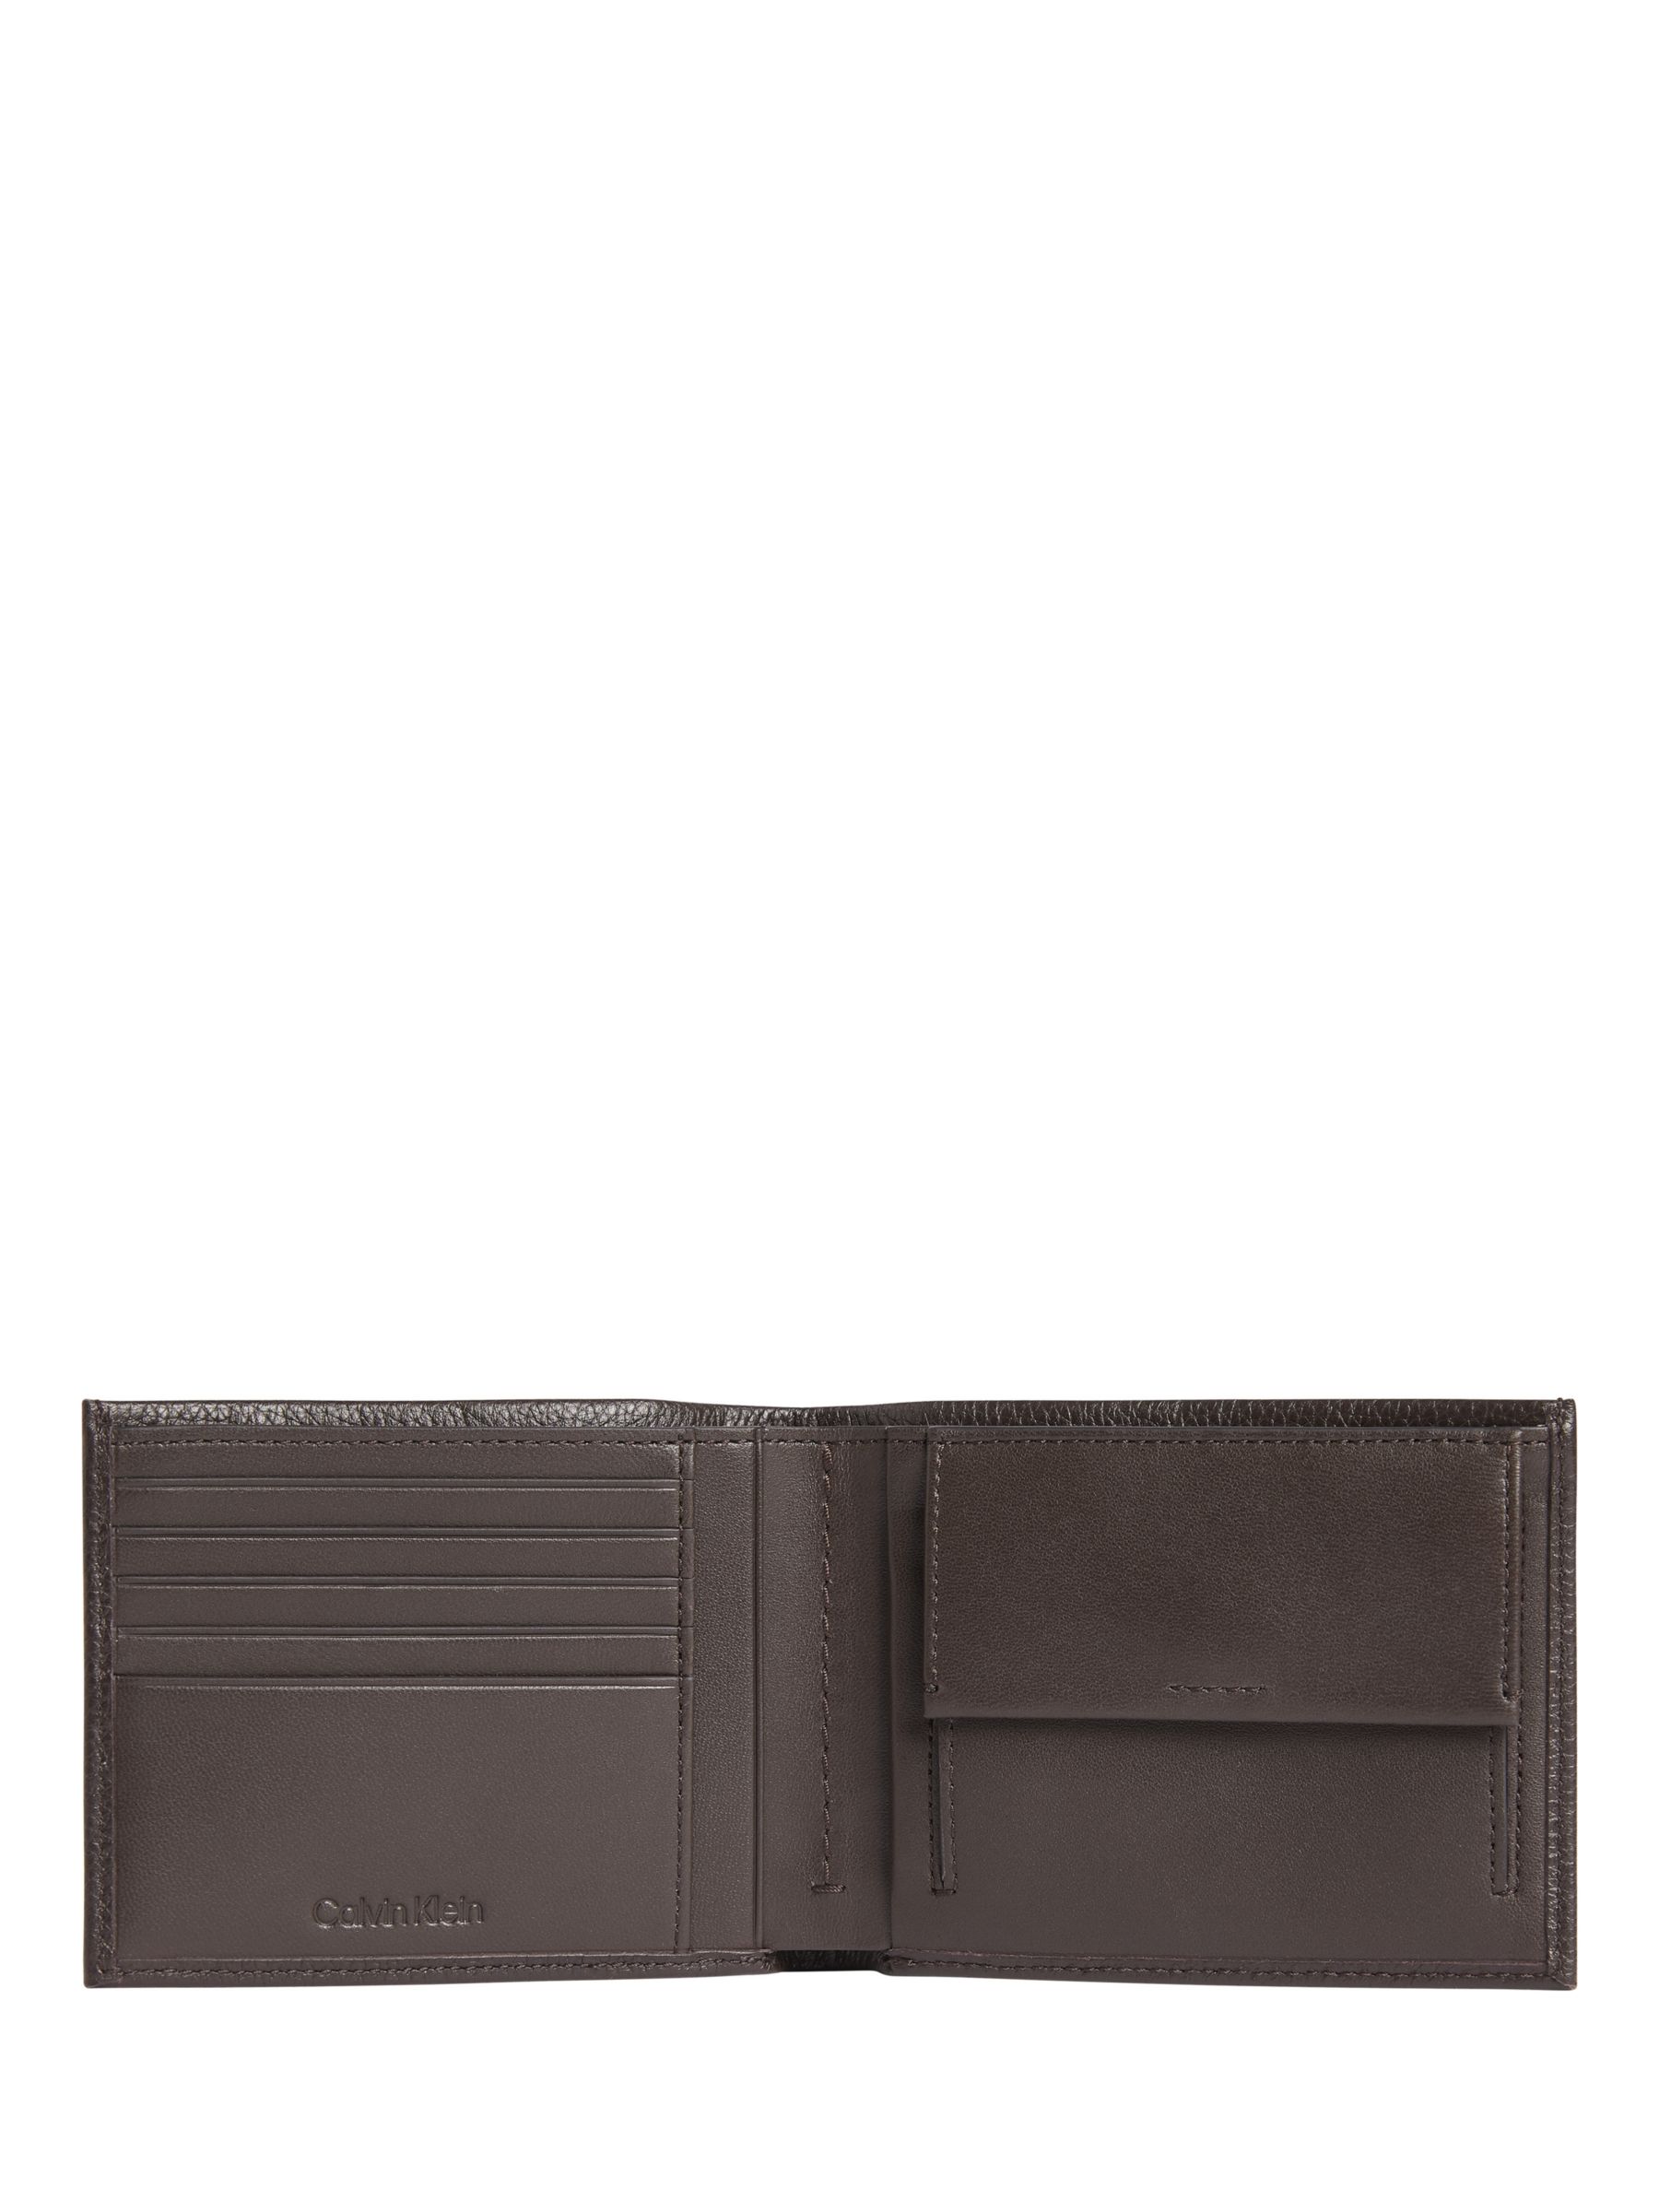 Calvin Klein Warmth Bifold Coin Wallet, Dark Brown, One Size